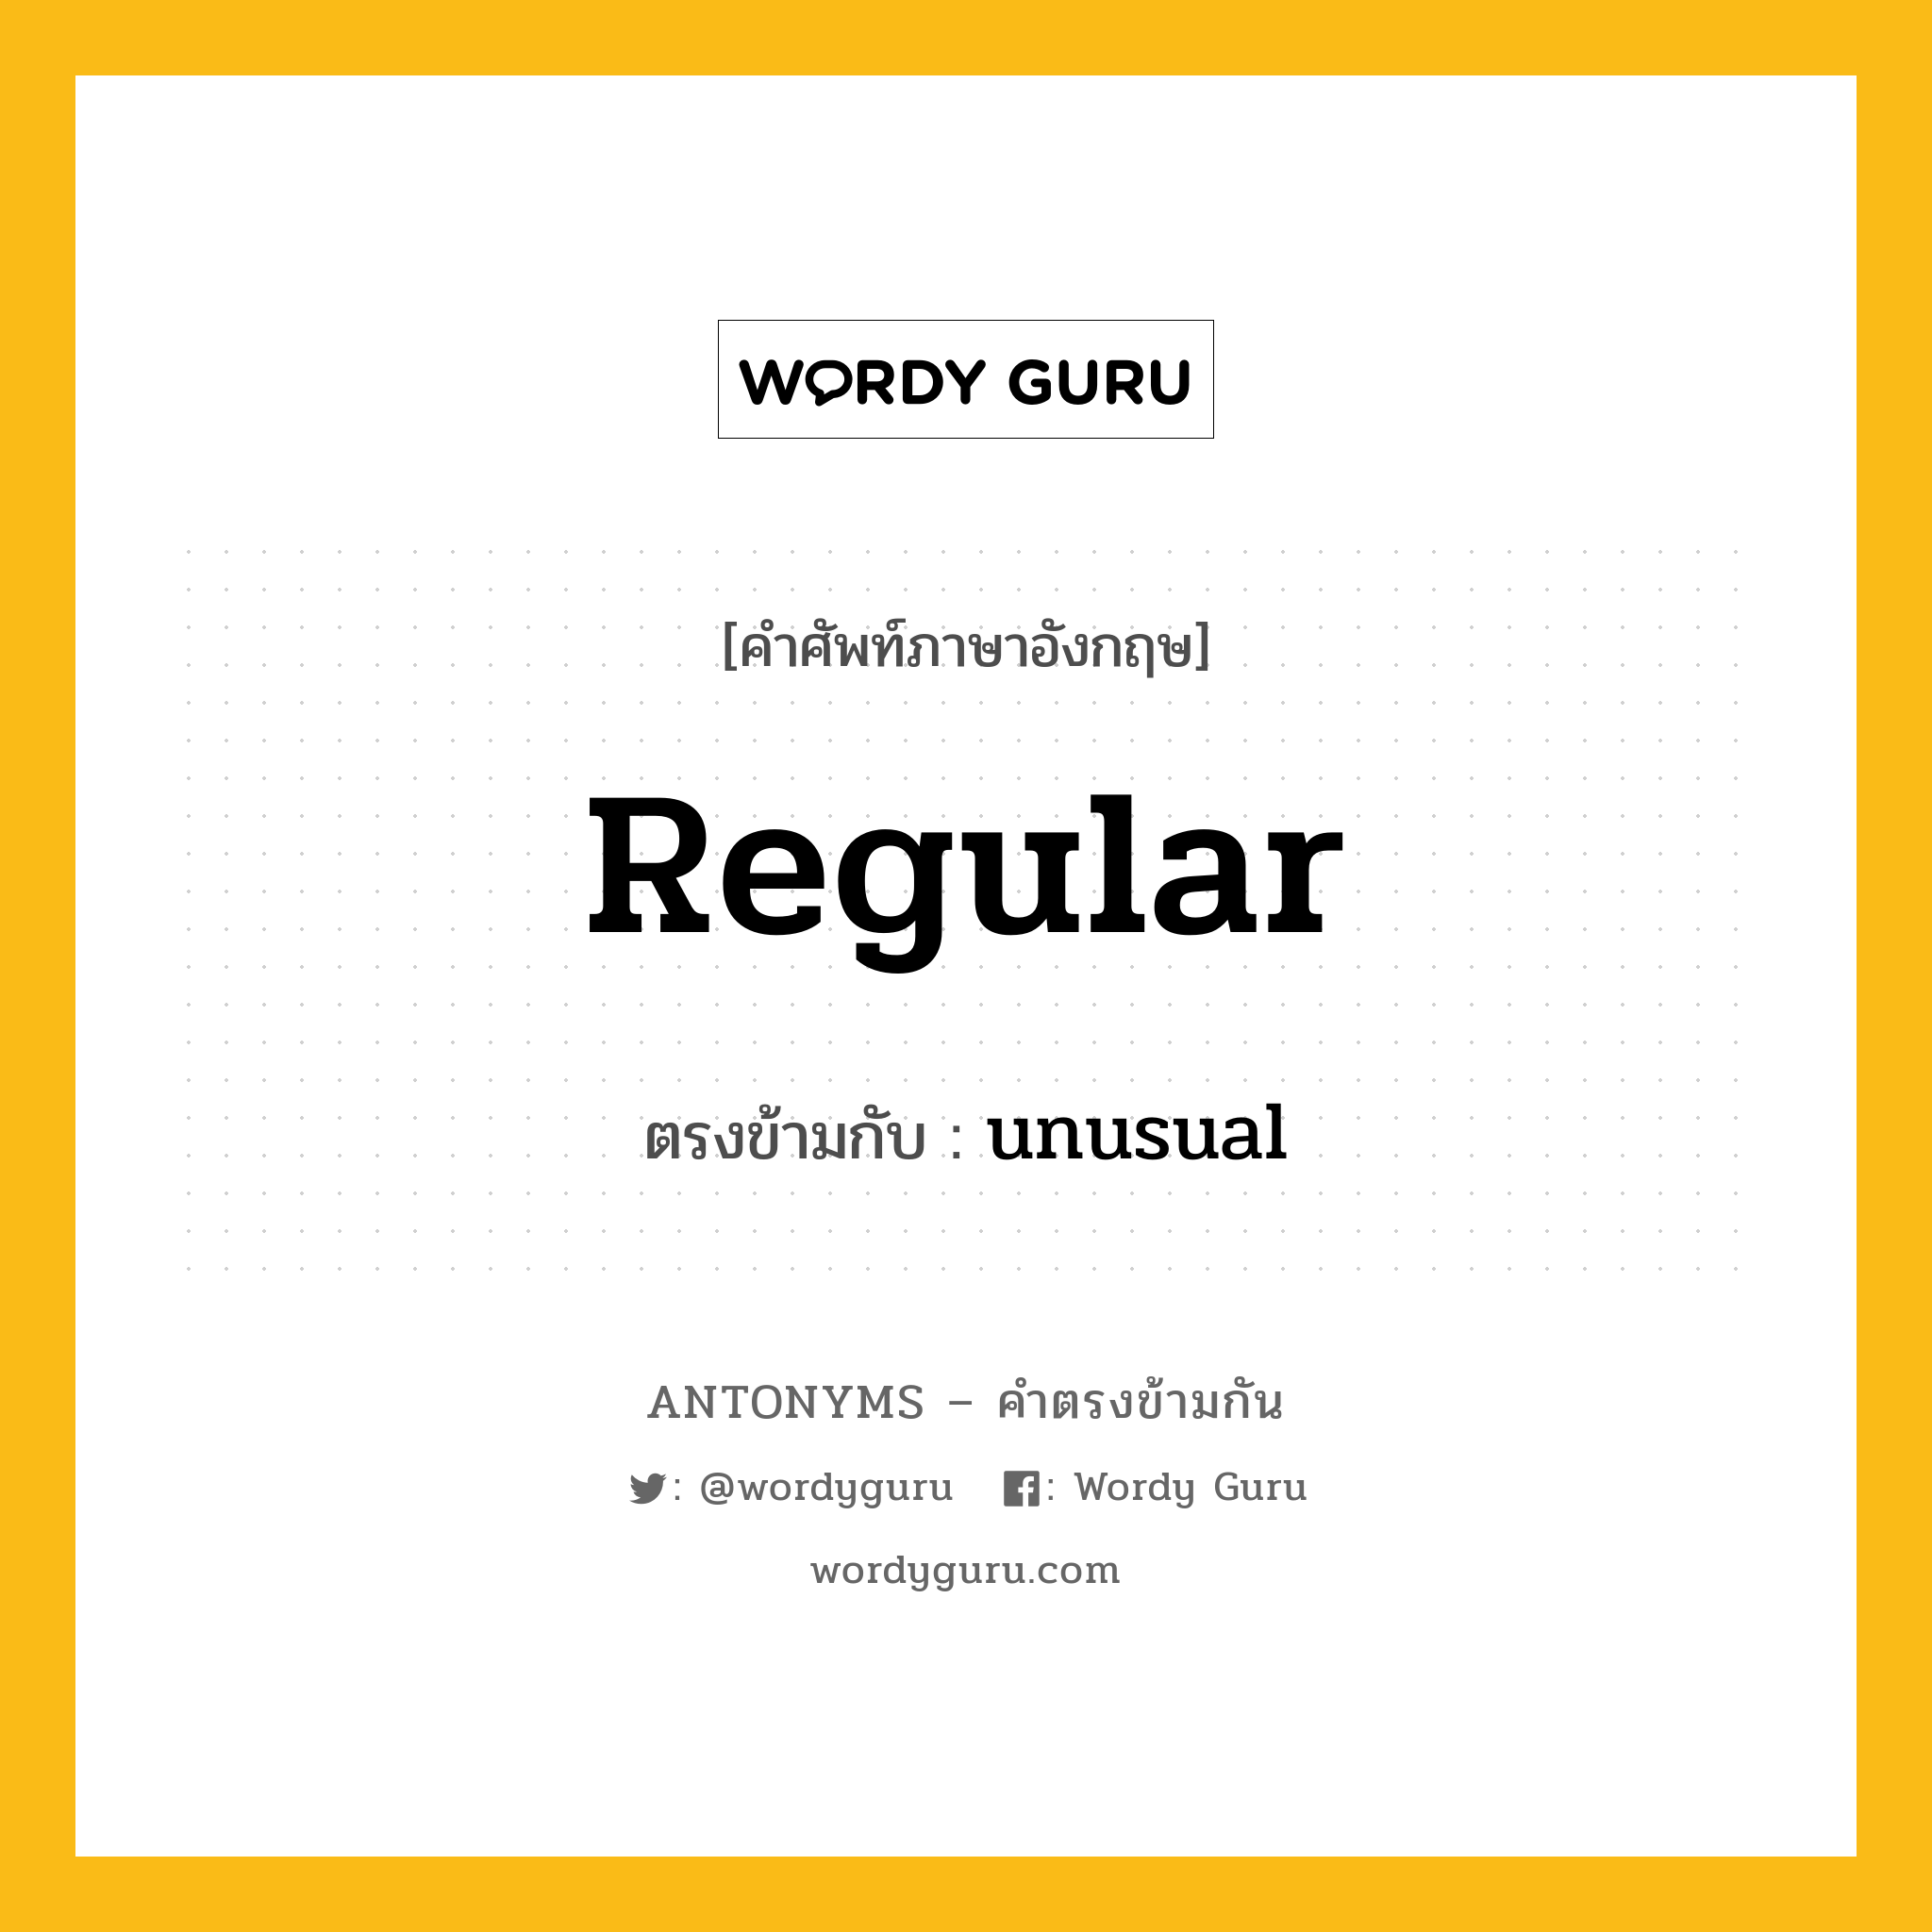 regular เป็นคำตรงข้ามกับคำไหนบ้าง?, คำศัพท์ภาษาอังกฤษ regular ตรงข้ามกับ unusual หมวด unusual